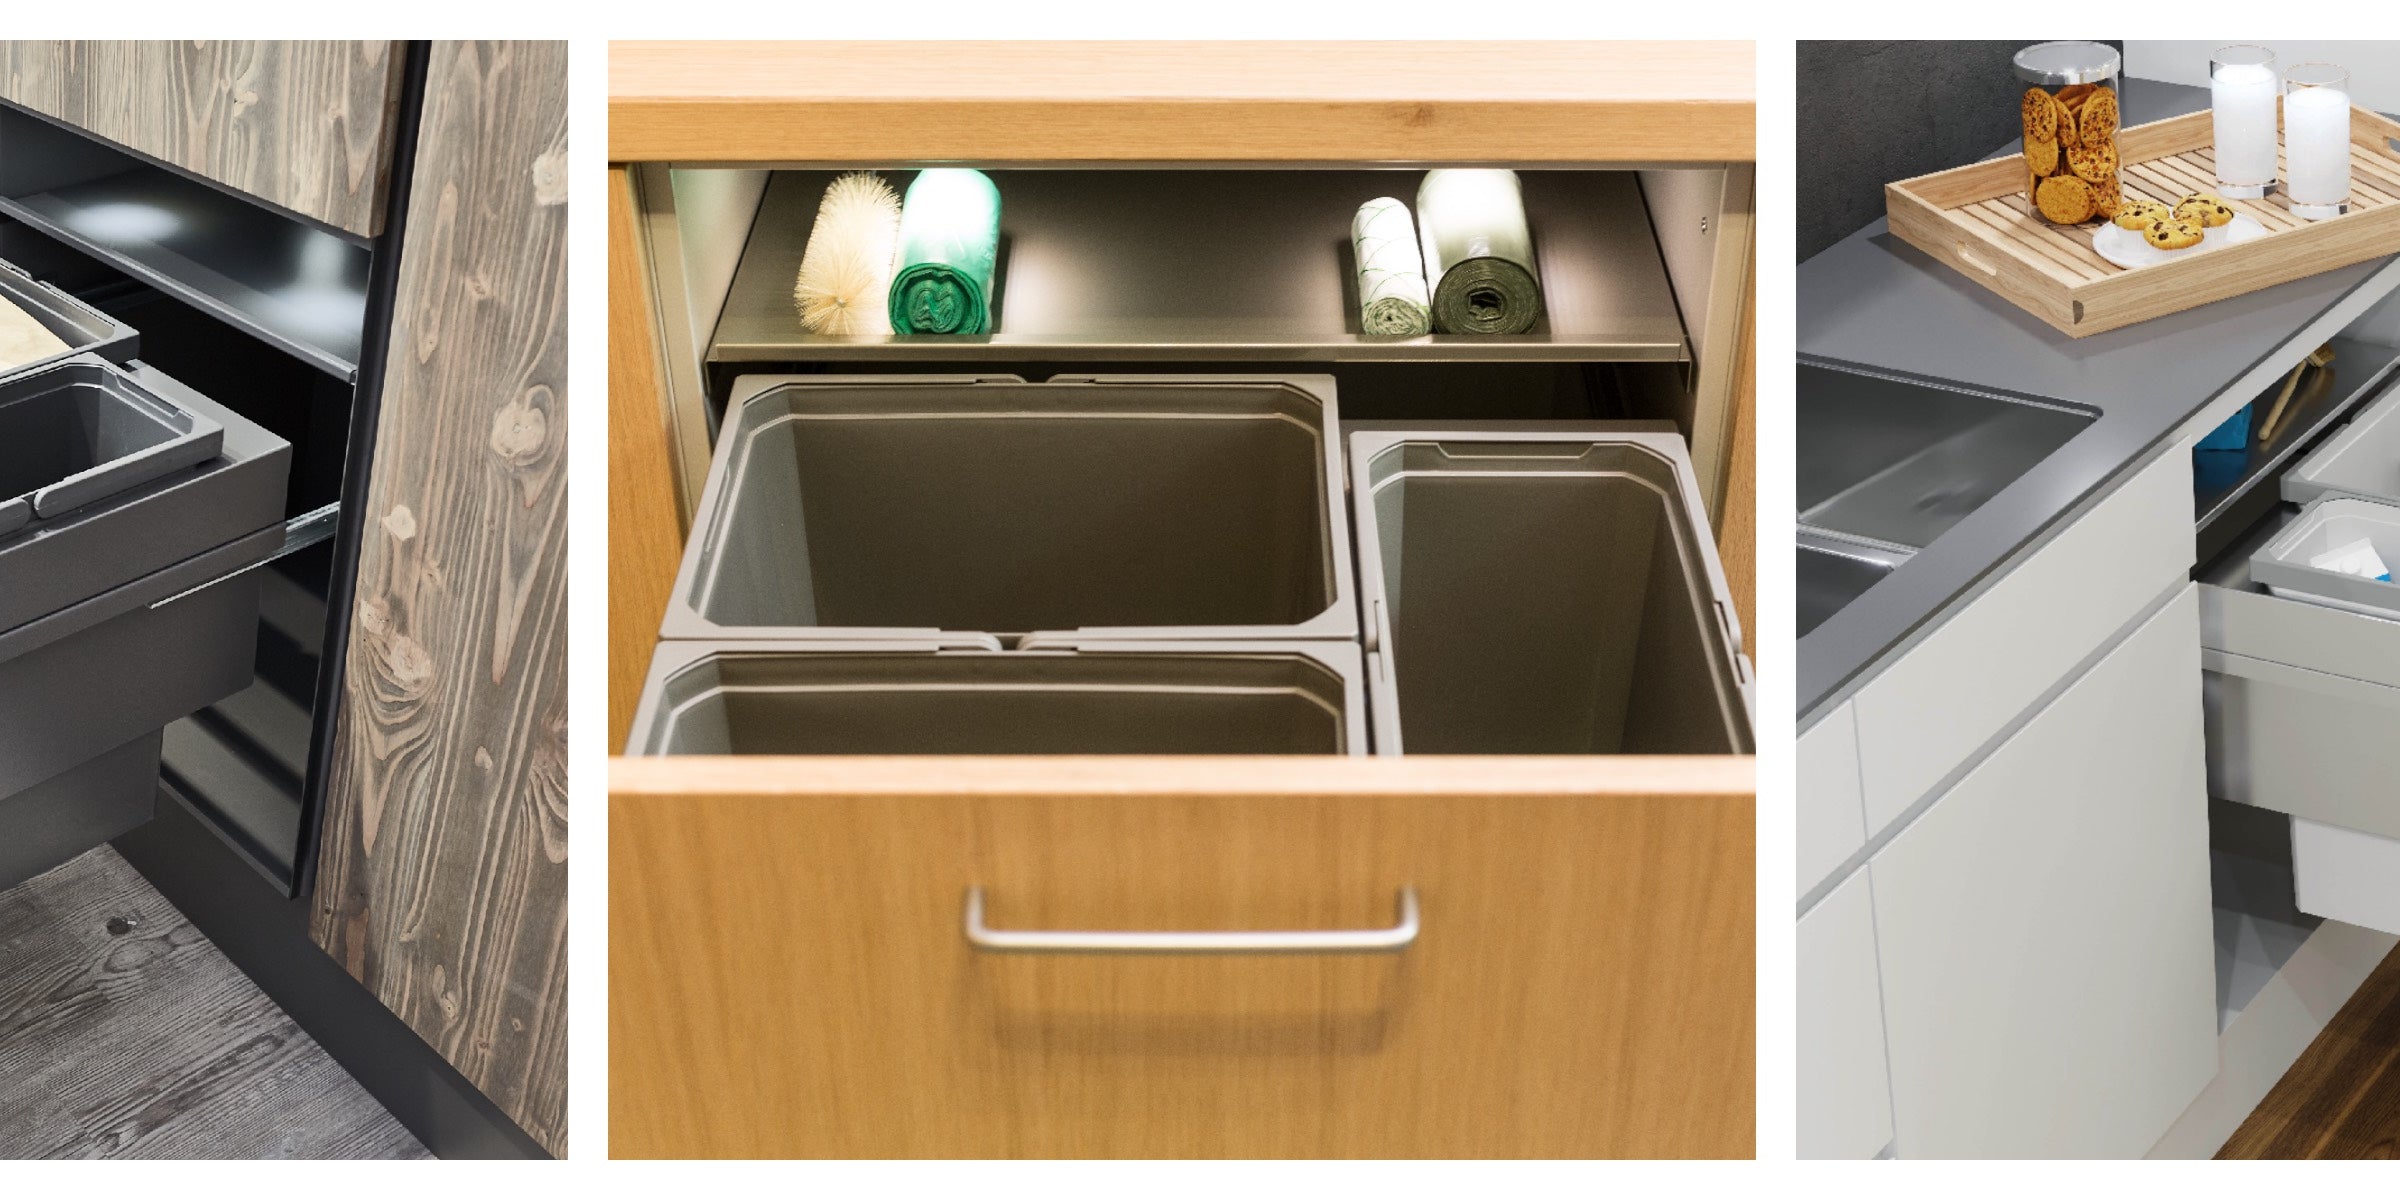 Vauth-Sagel in-cupboard kitchen bins: new extended range